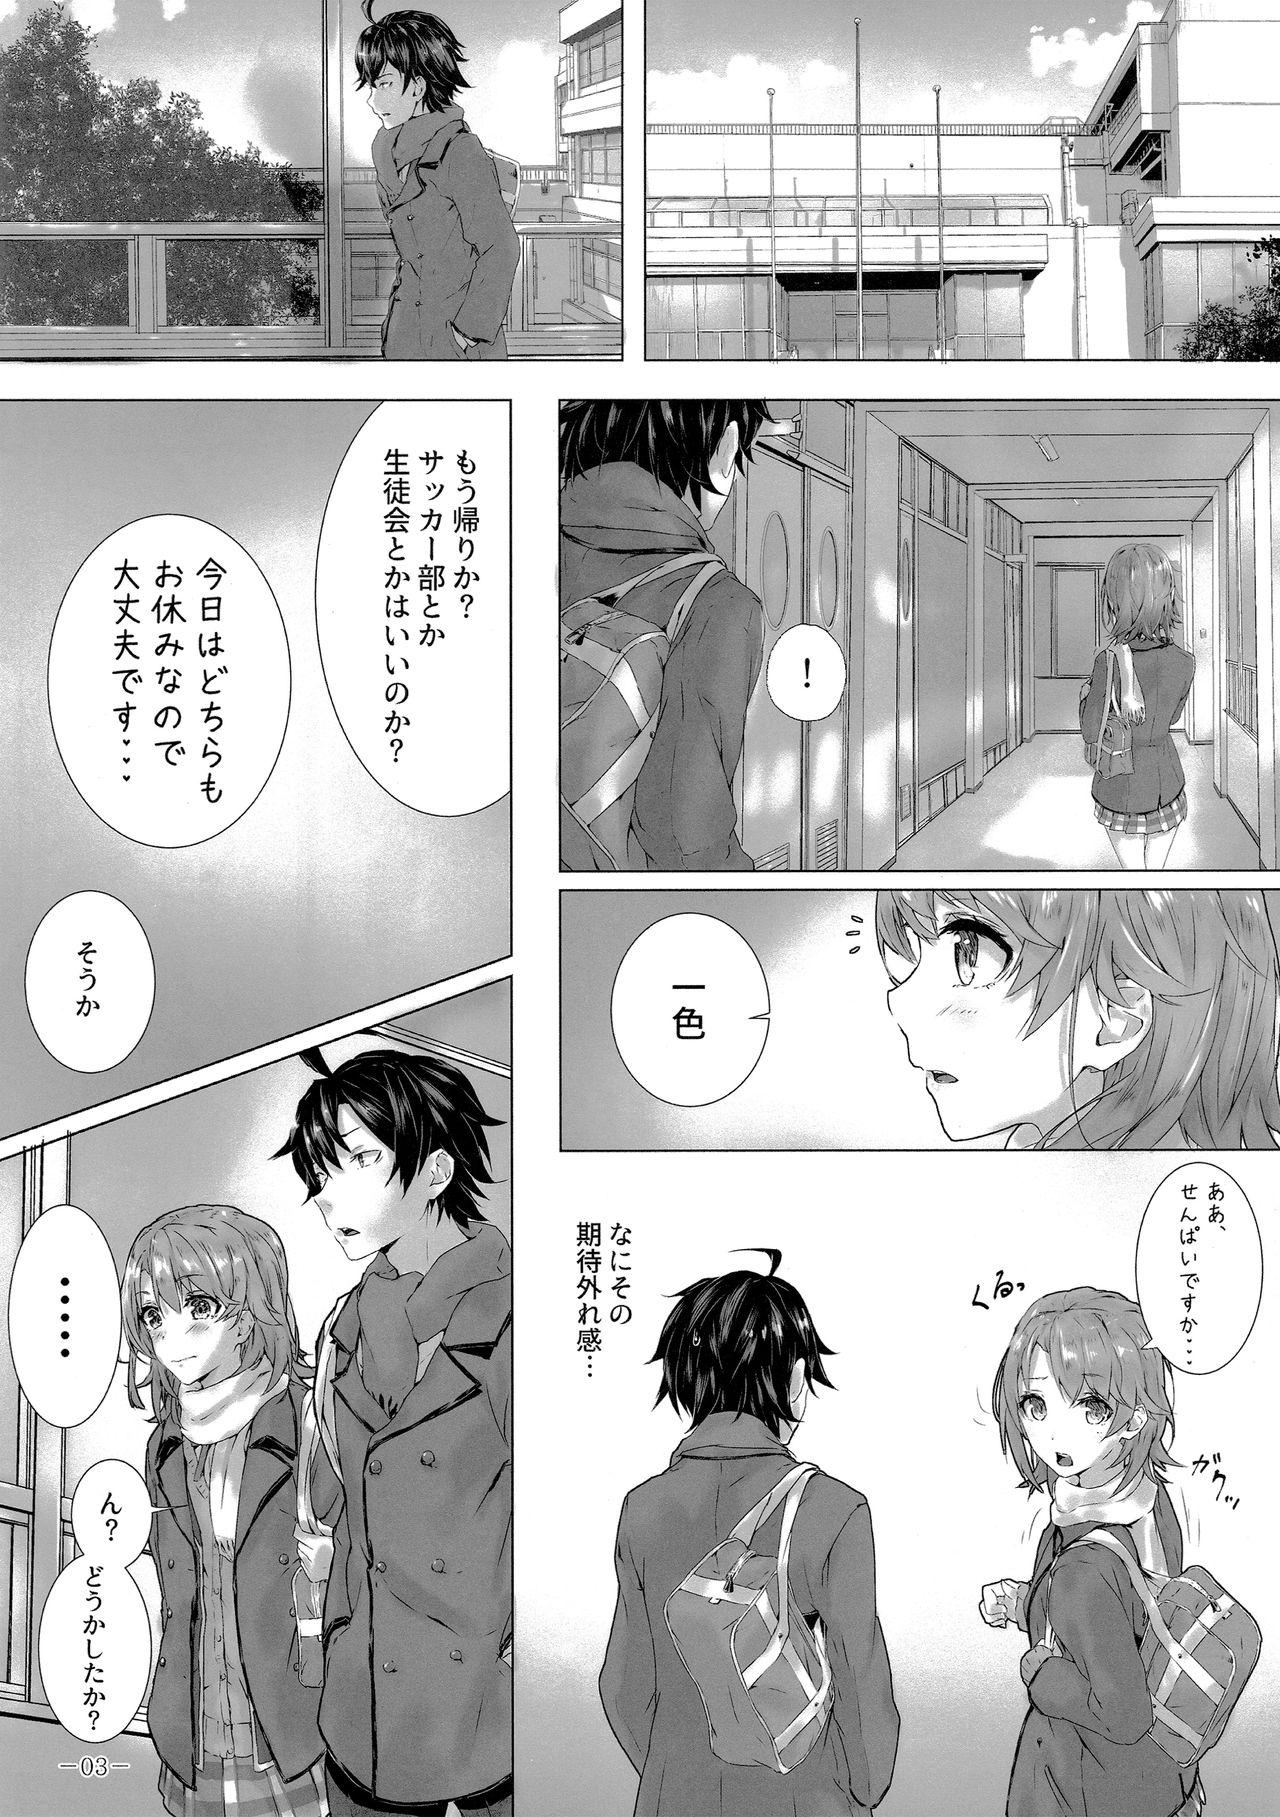 Nena Kitto, Isshiki Iroha wa… - Yahari ore no seishun love come wa machigatteiru Amiga - Page 4